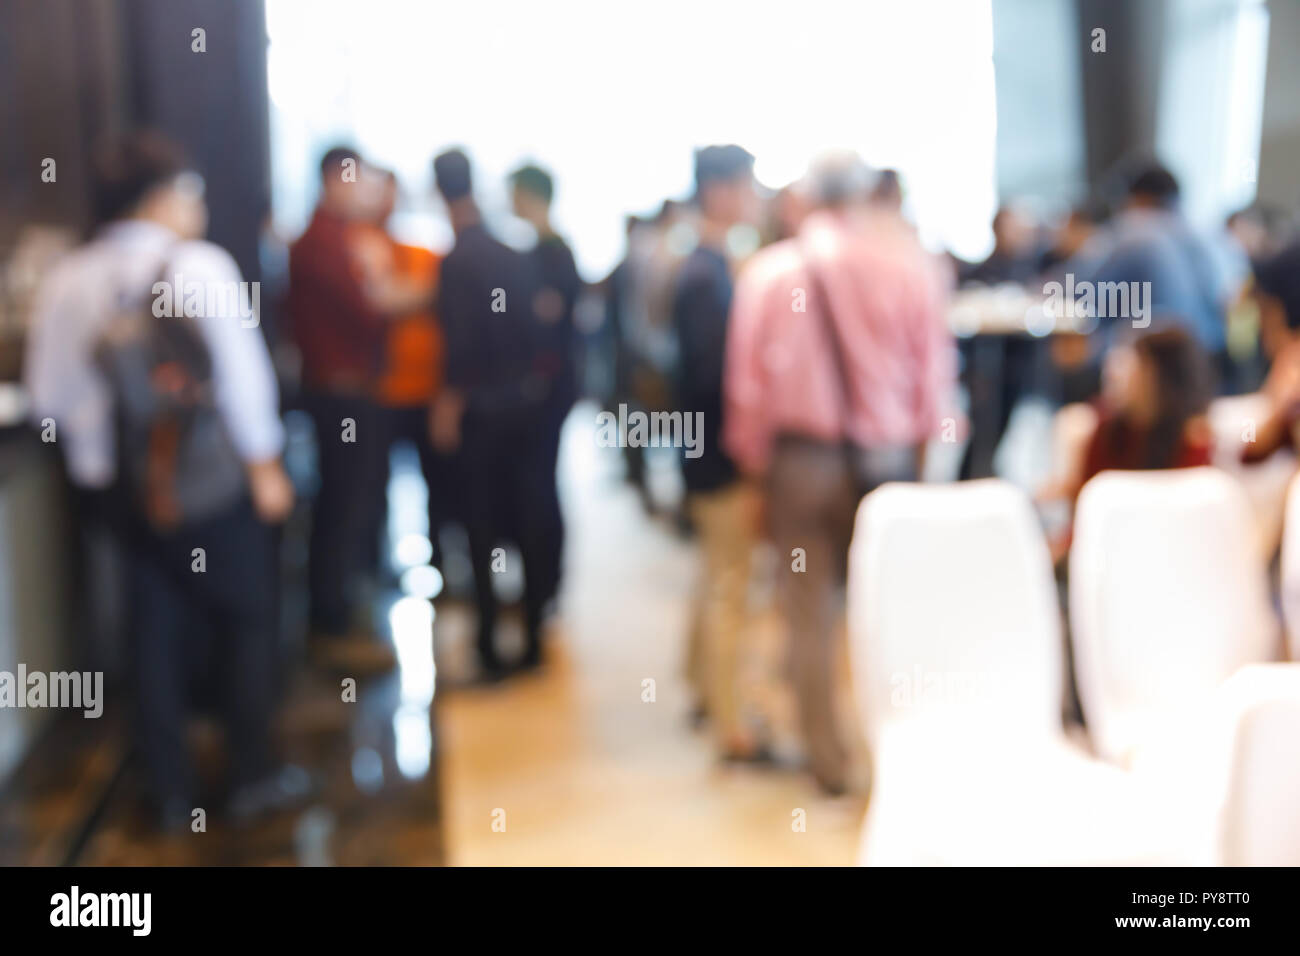 Abstract blur Zielgruppe Menschen in Pressekonferenz Ereignis oder Corporate Seminar Tagung Stockfoto